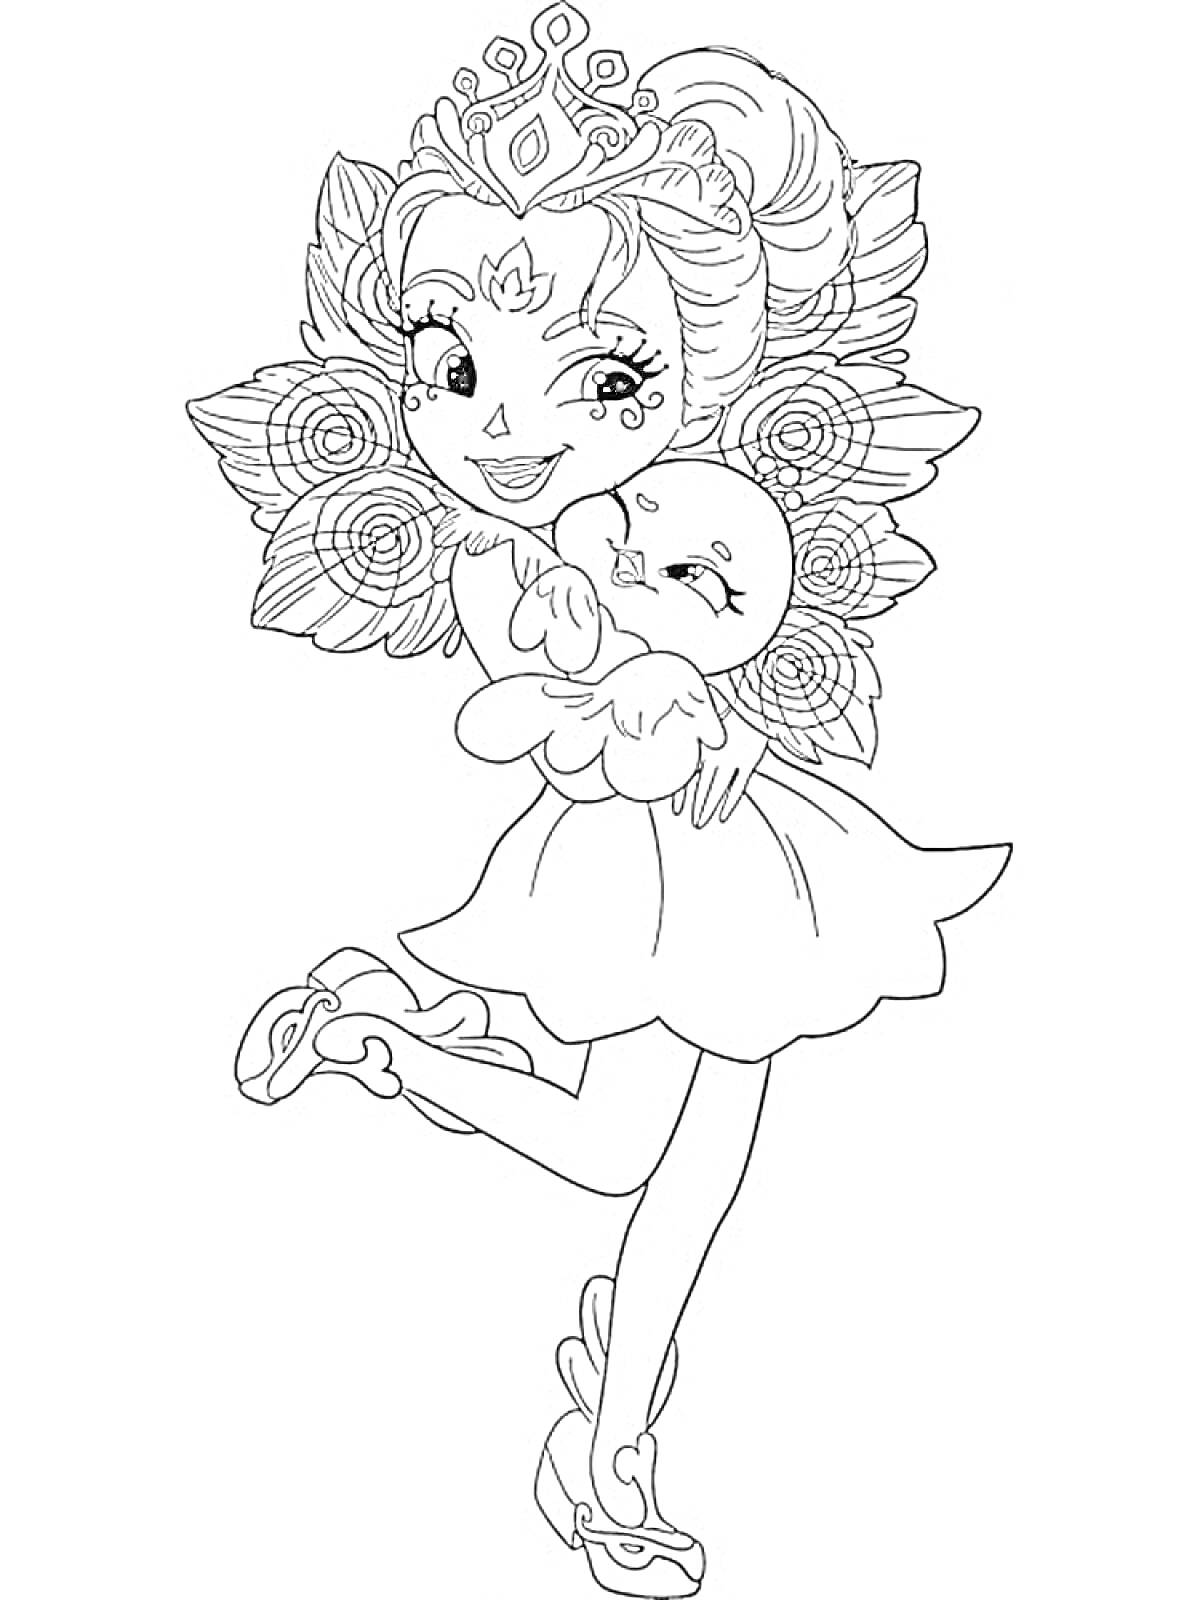 Раскраска Девочка с короной в цветах, держащая птичку на руках, на одной ноге